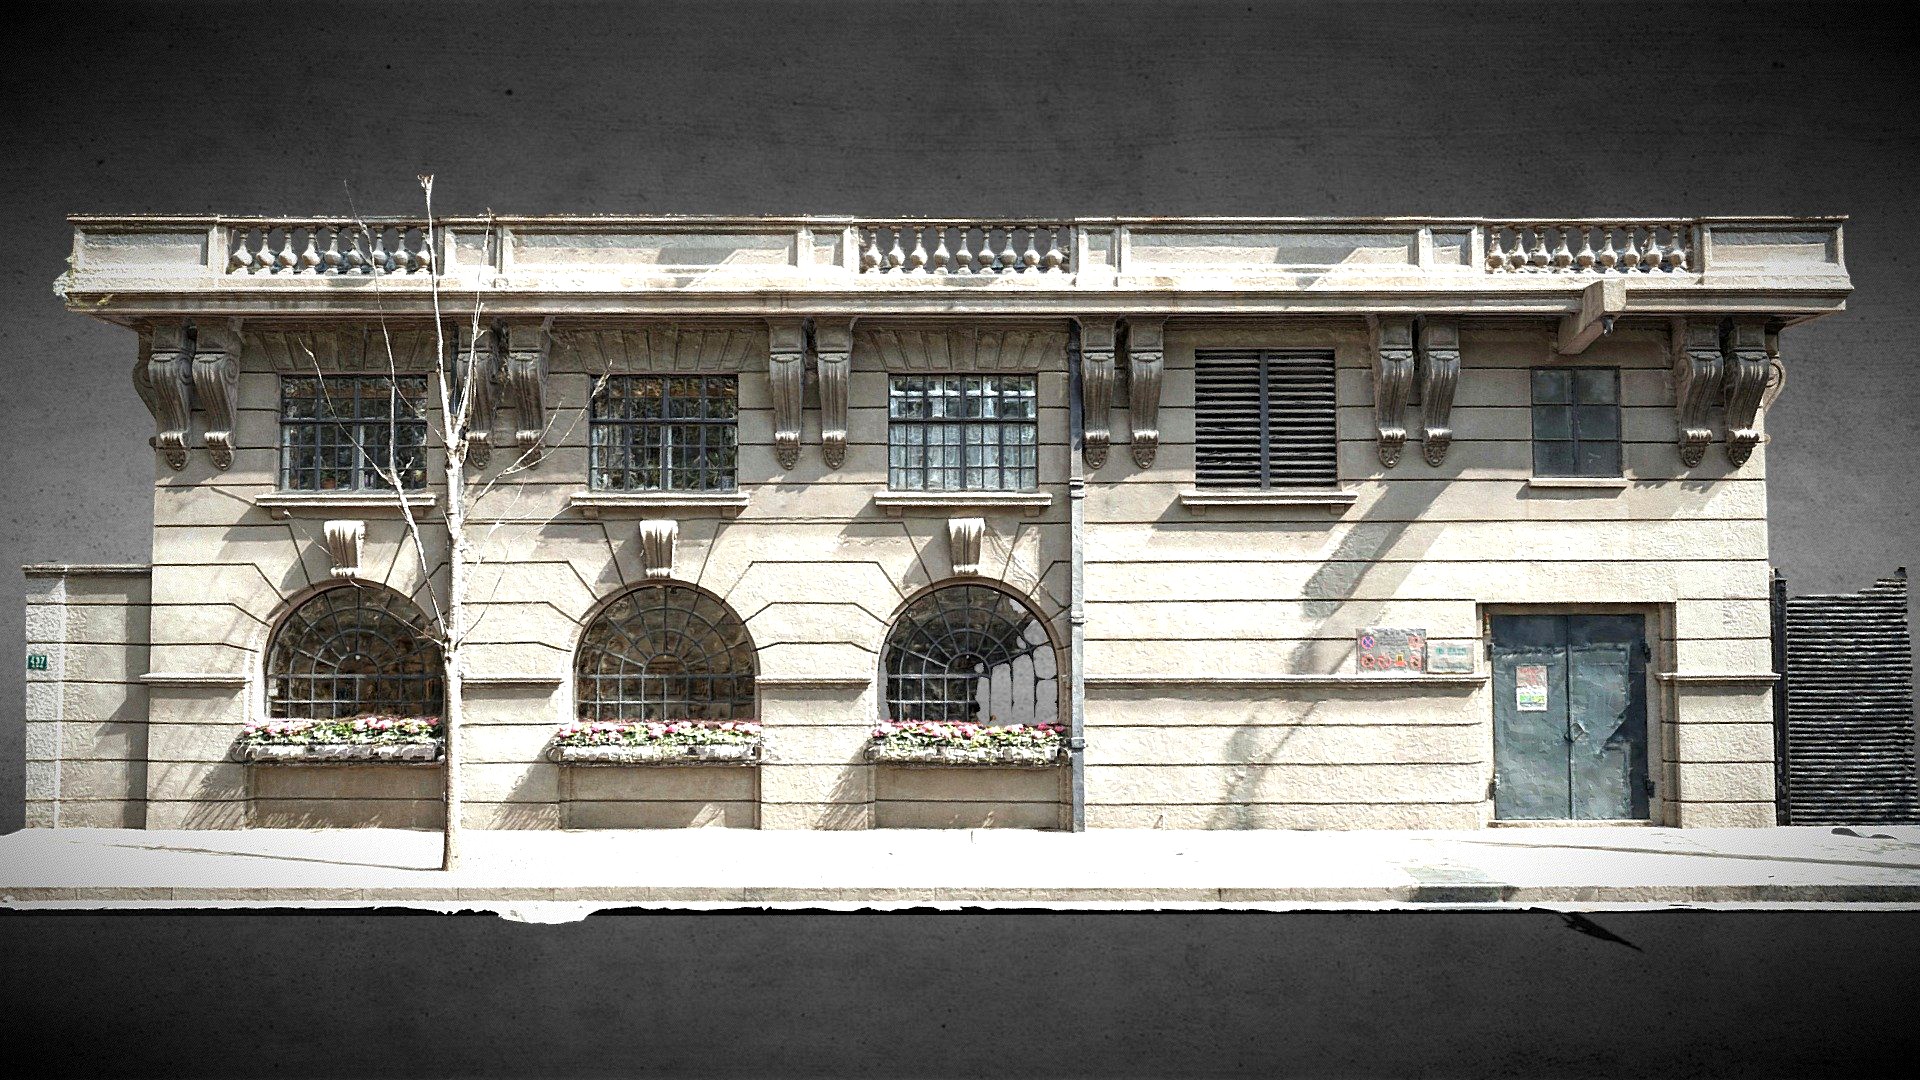 The podium facade of I.S.S Normandie Apartment